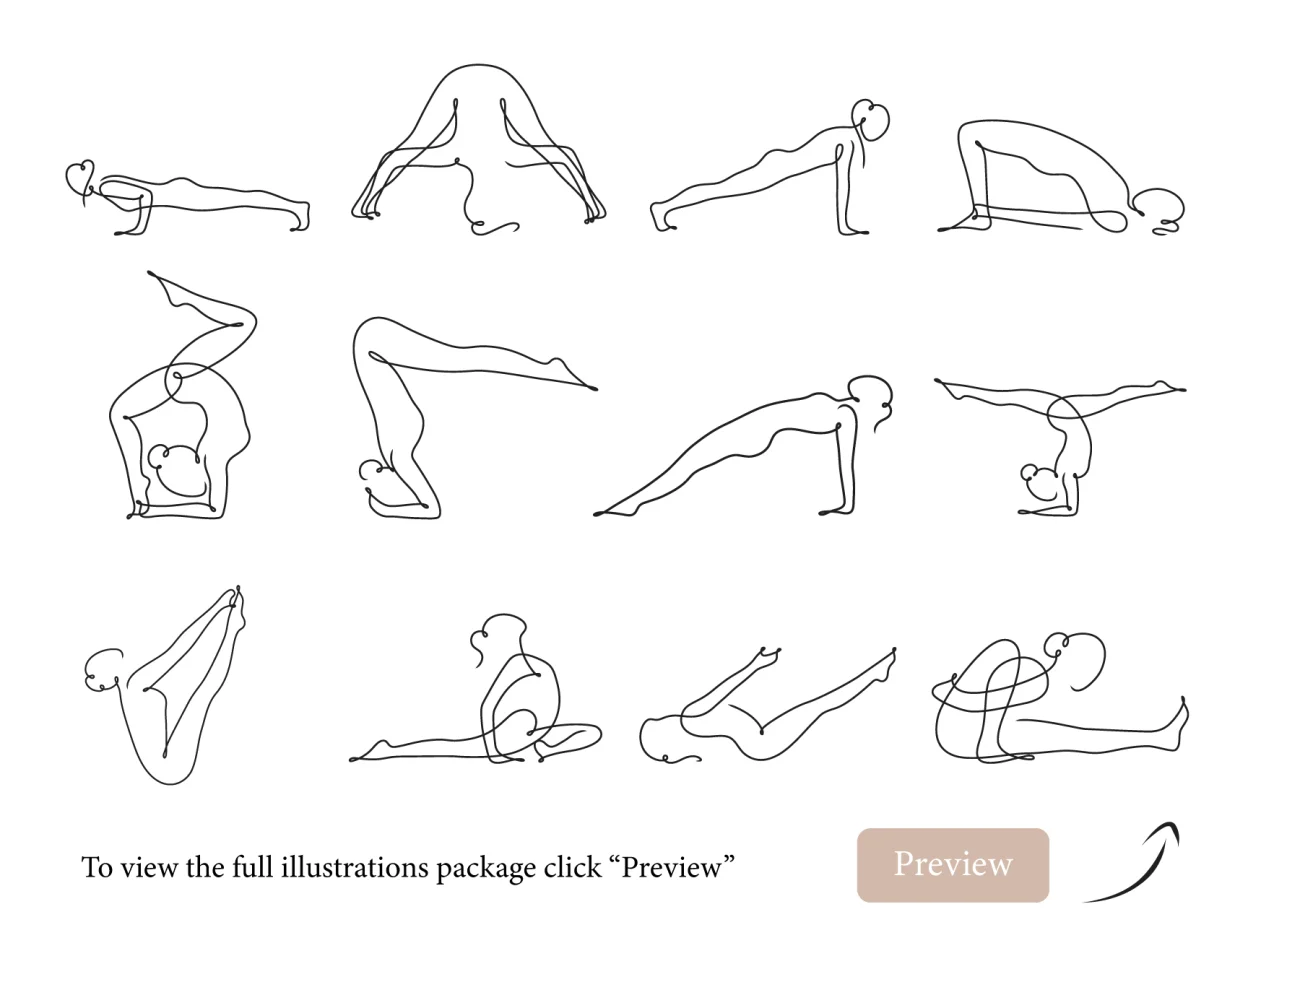 43款抽象瑜伽简笔线条插画 Yoga Continuous Line Illustrations-人物插画、场景插画、学习生活、插画、插画风格、概念创意、状态页、线条手绘、运动健身-到位啦UI